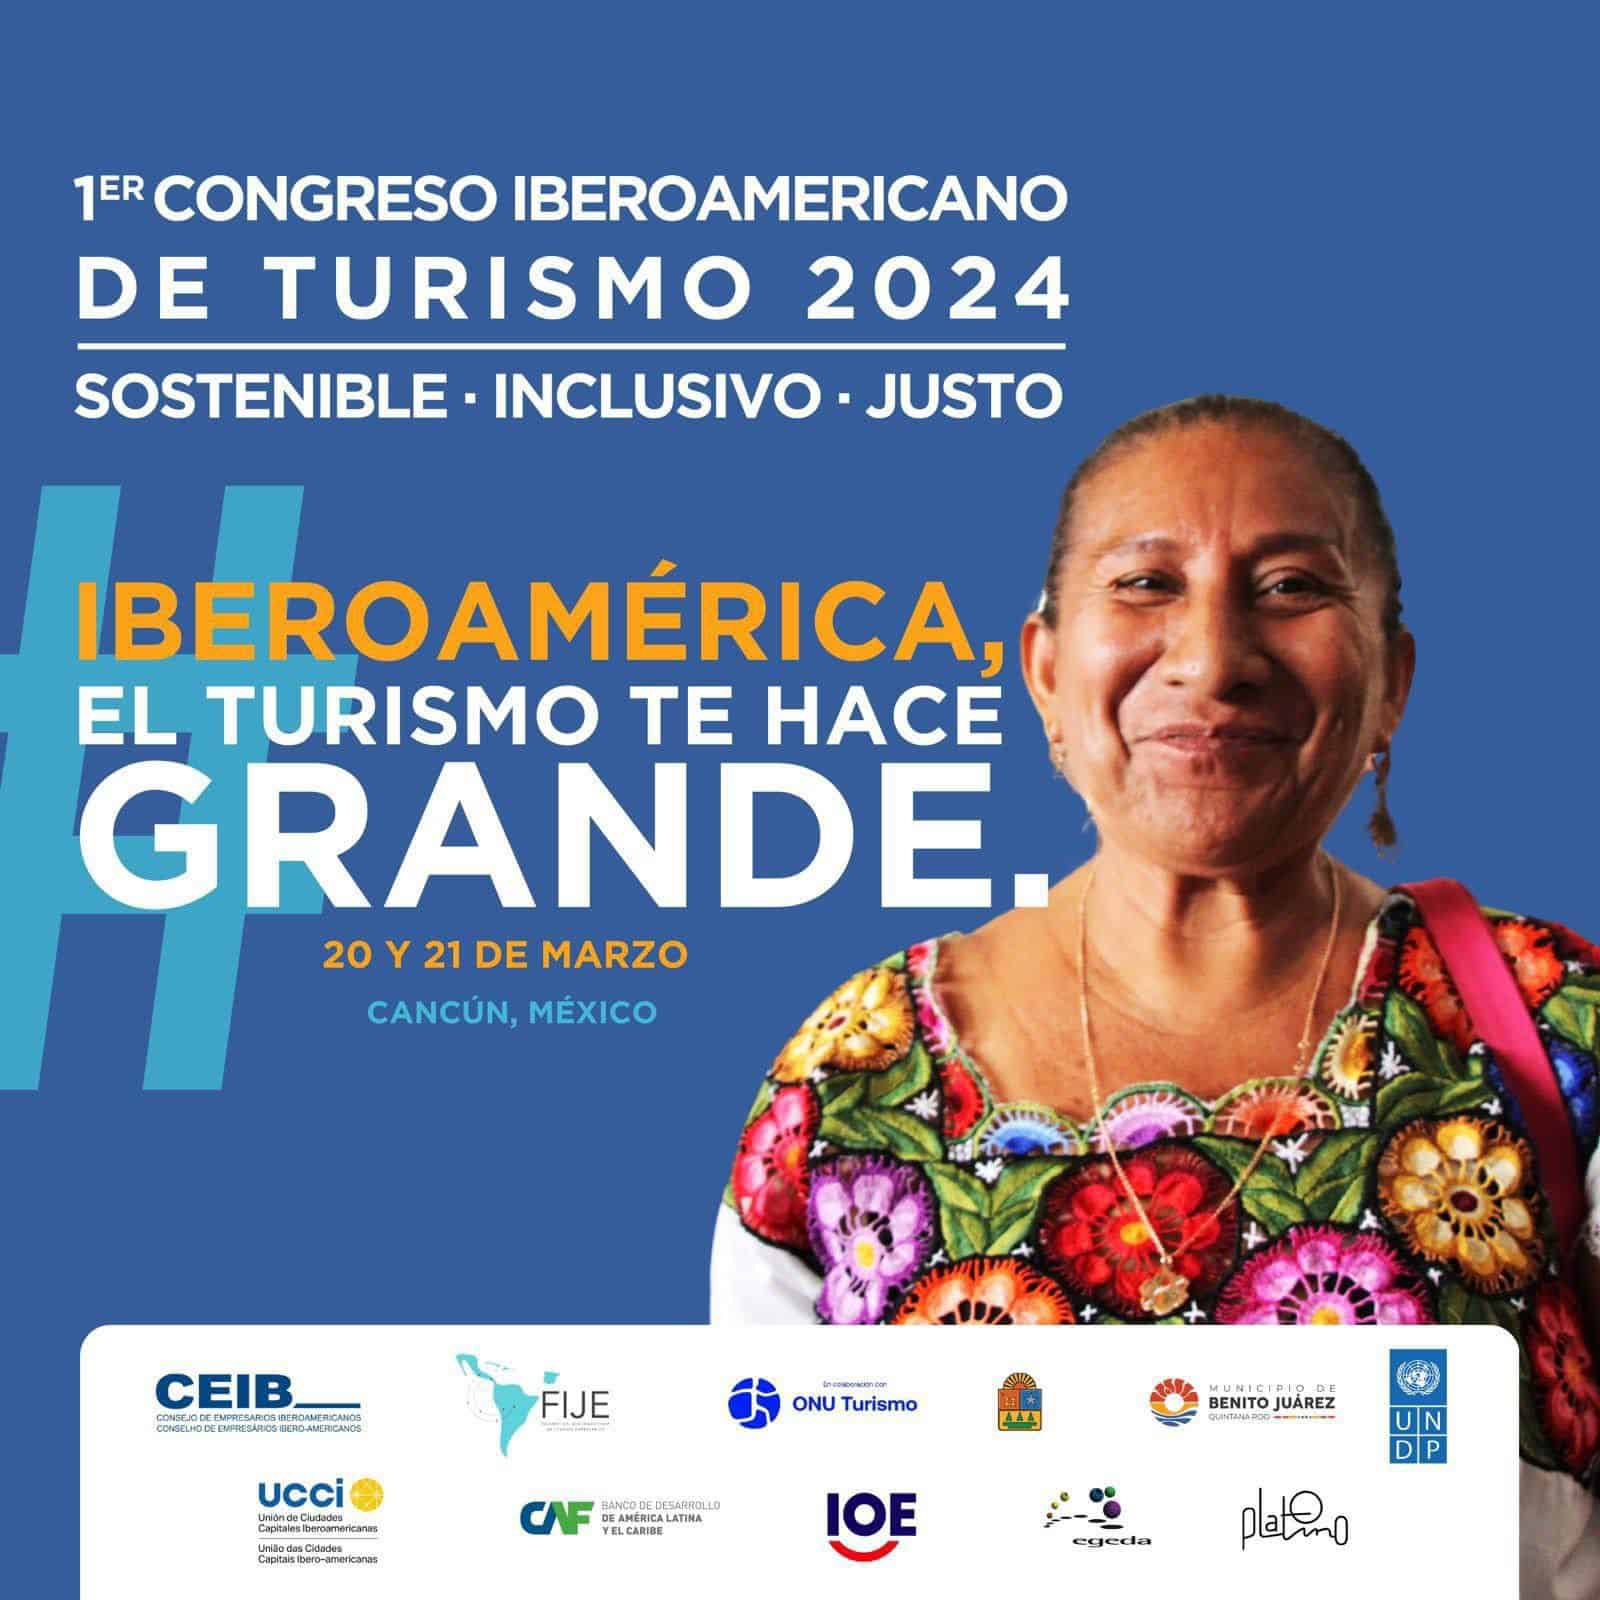 El Primer Congreso Iberoamericano de Turismo 2024 será el 20 y 21 de marzo en Cancún